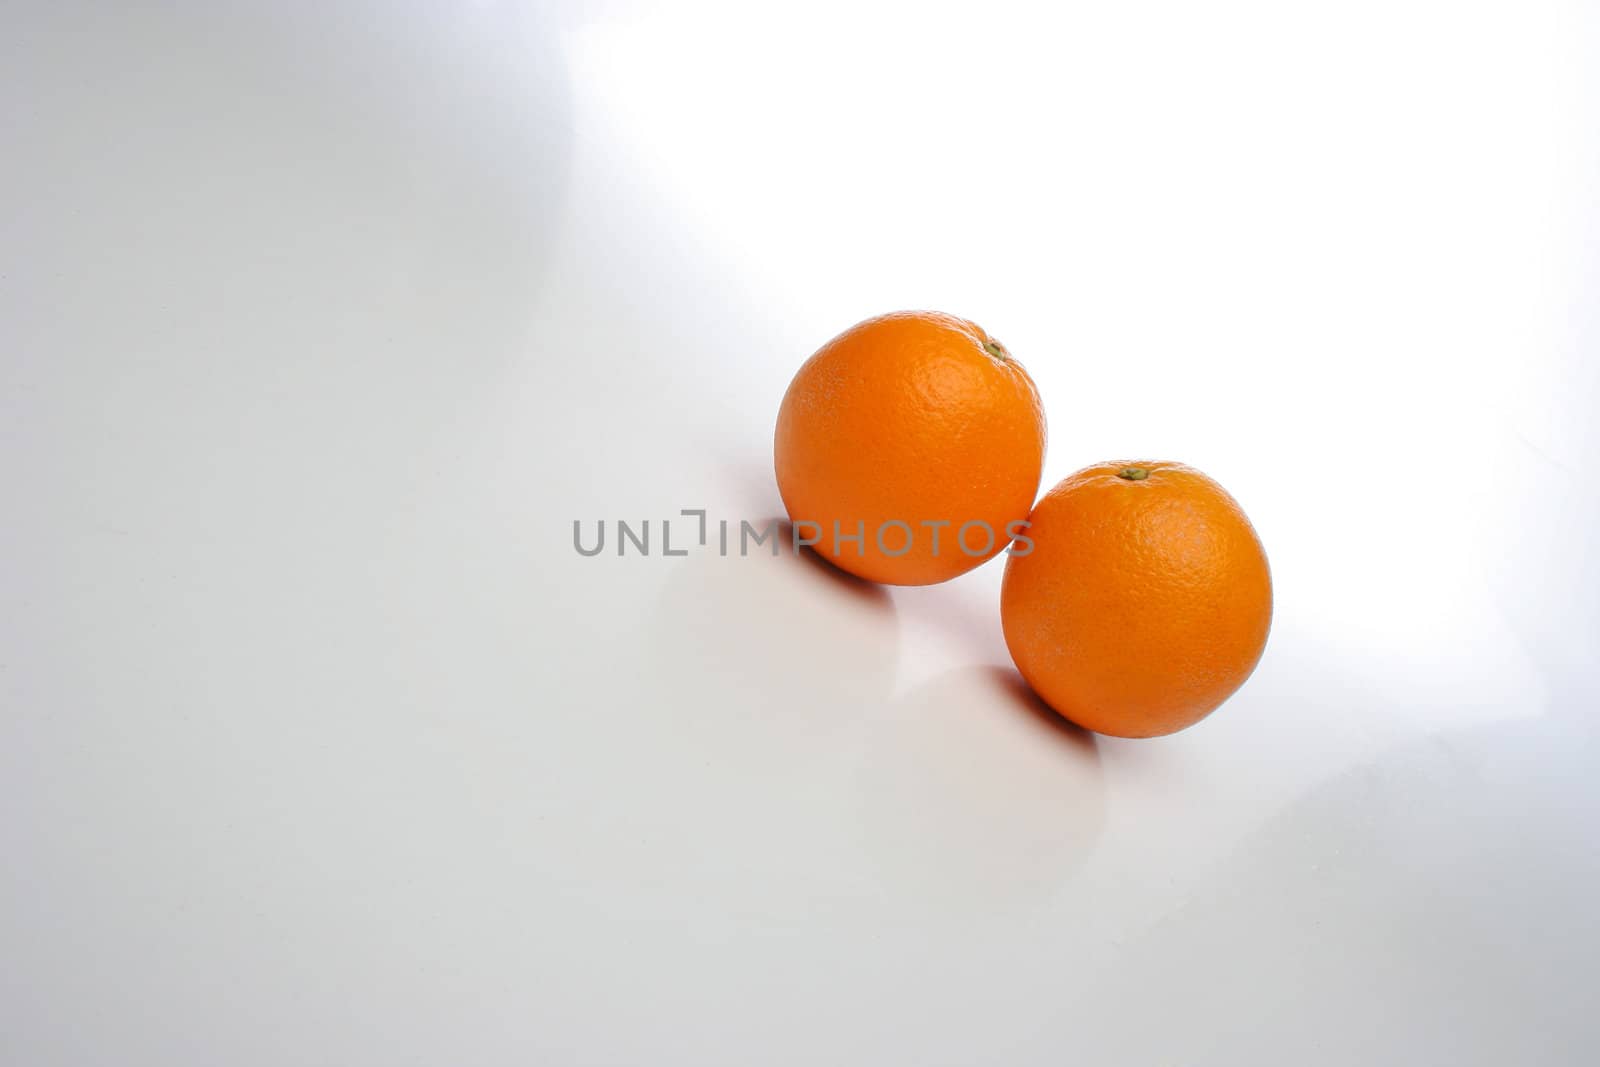 A pair of juicy oranges by Erdosain